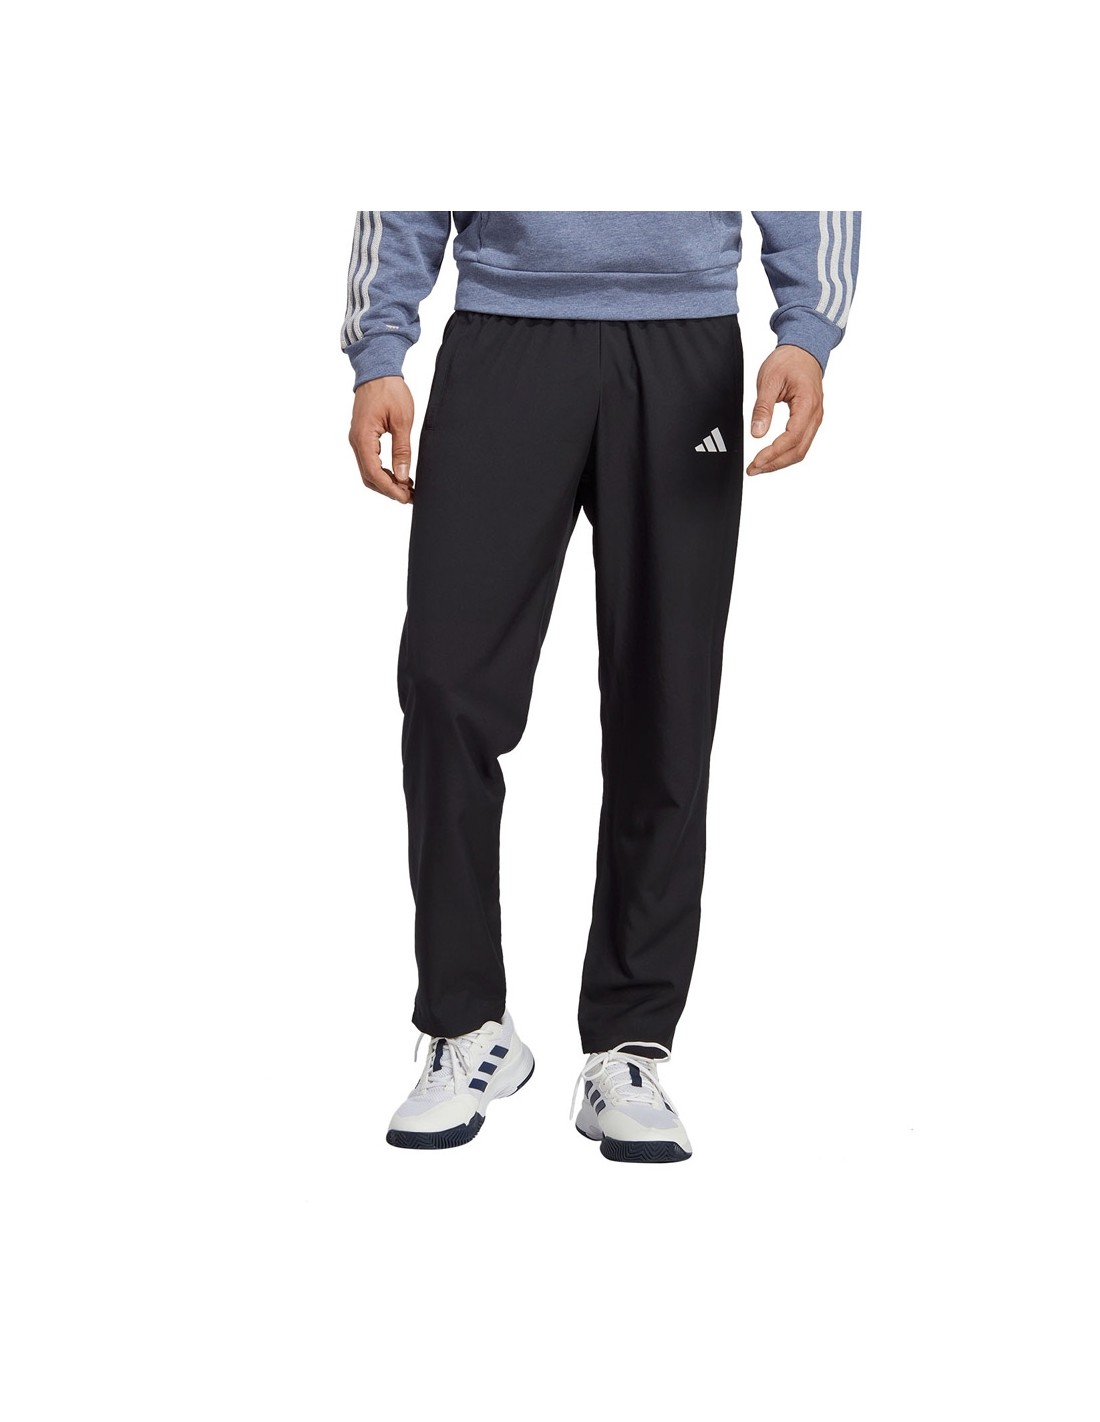 Pantalon Adidas Tennis Ht7205, Calção padel